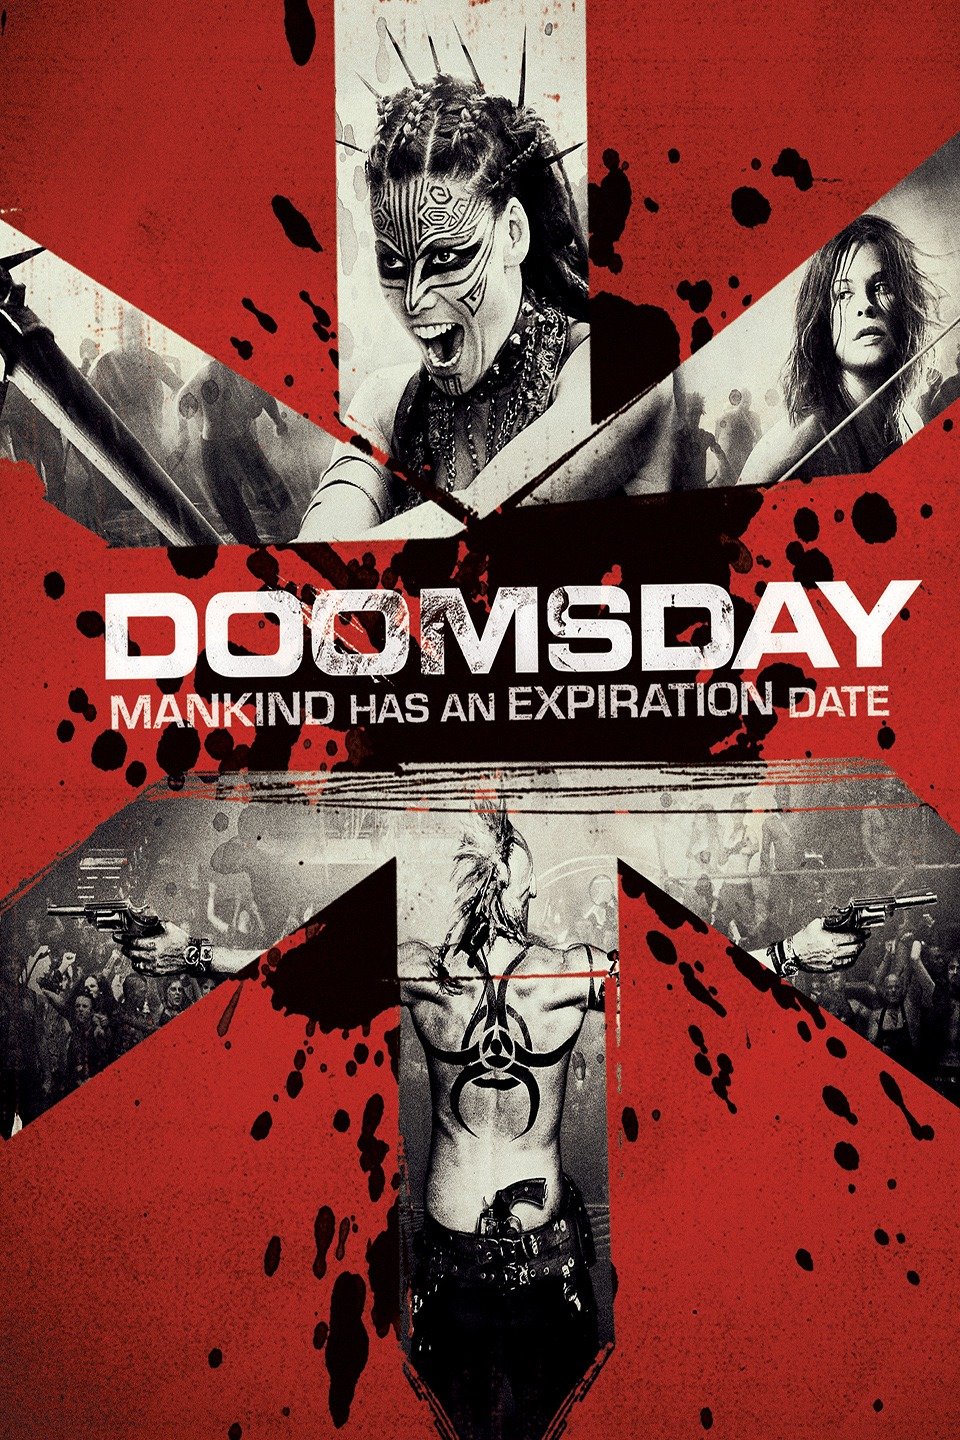 โหลดหนัง Doomsday (2008) ดูมส์เดย์ ห่าล้างโลก